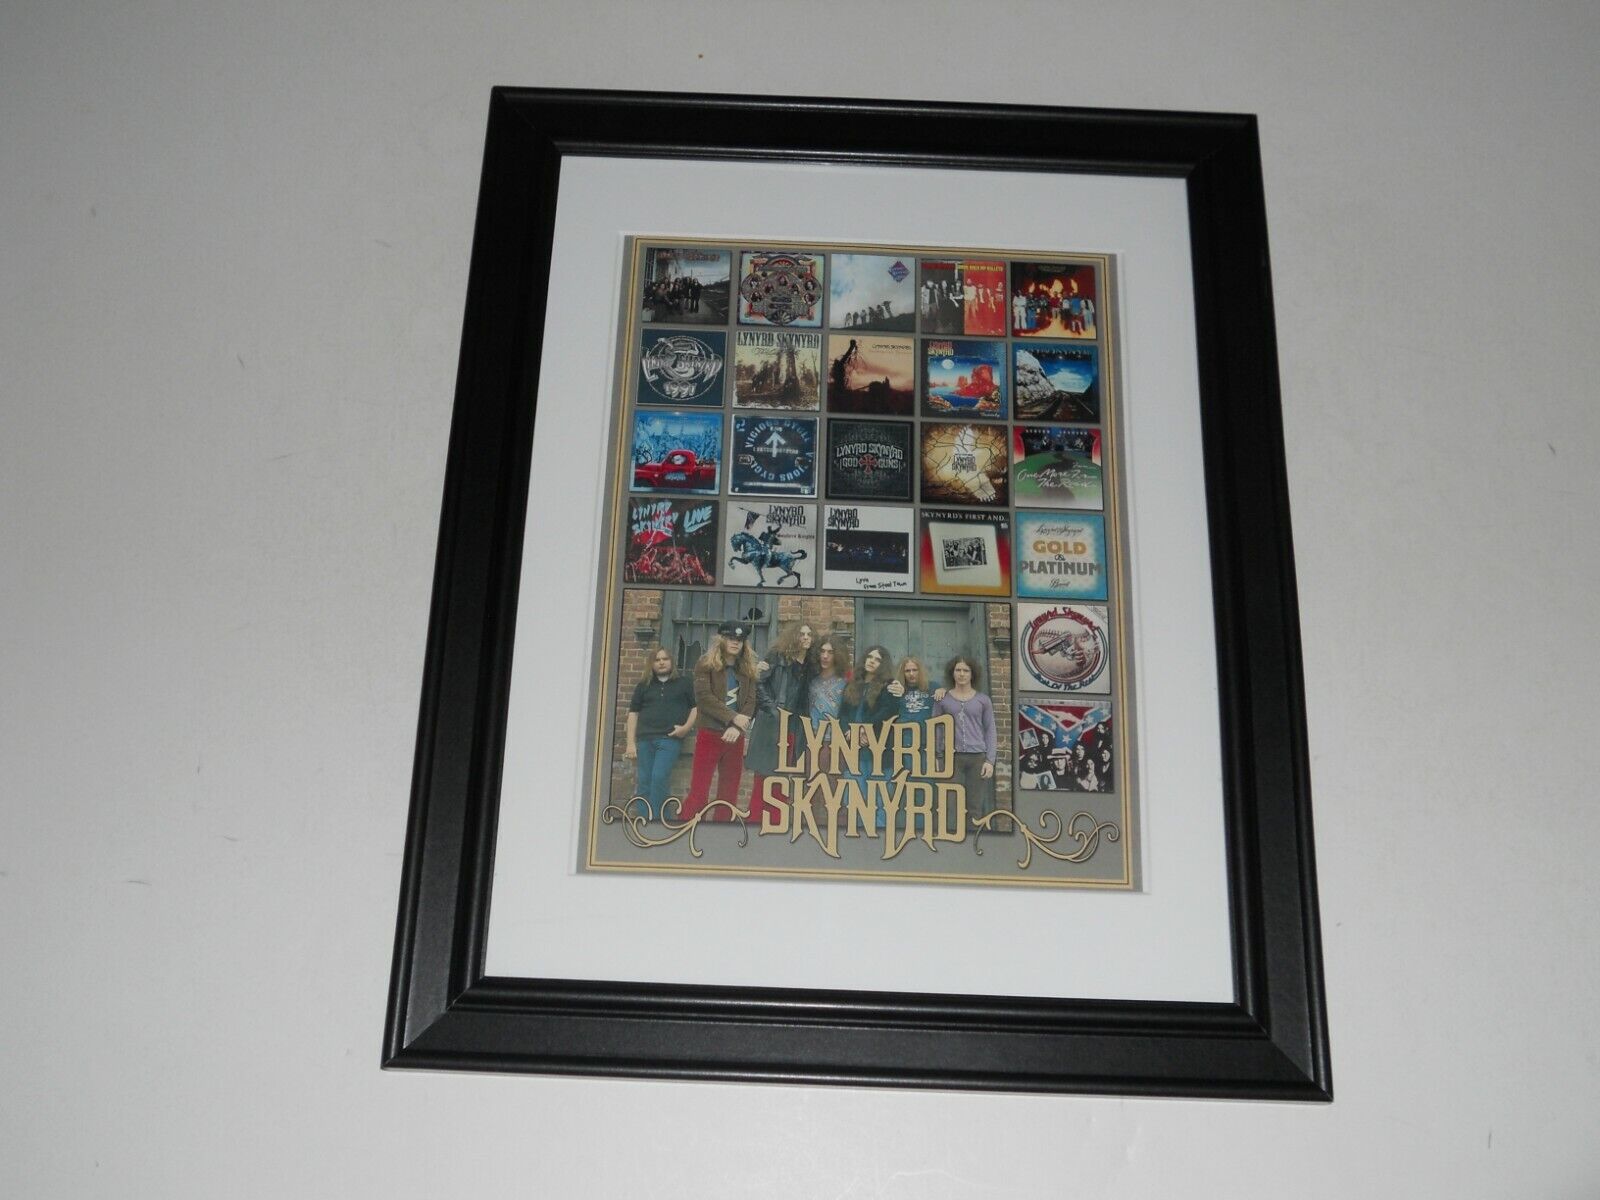 Framed Lynyrd Skynyrd 1972-2020 Entire Catalog Album Cover Art 14"x17"